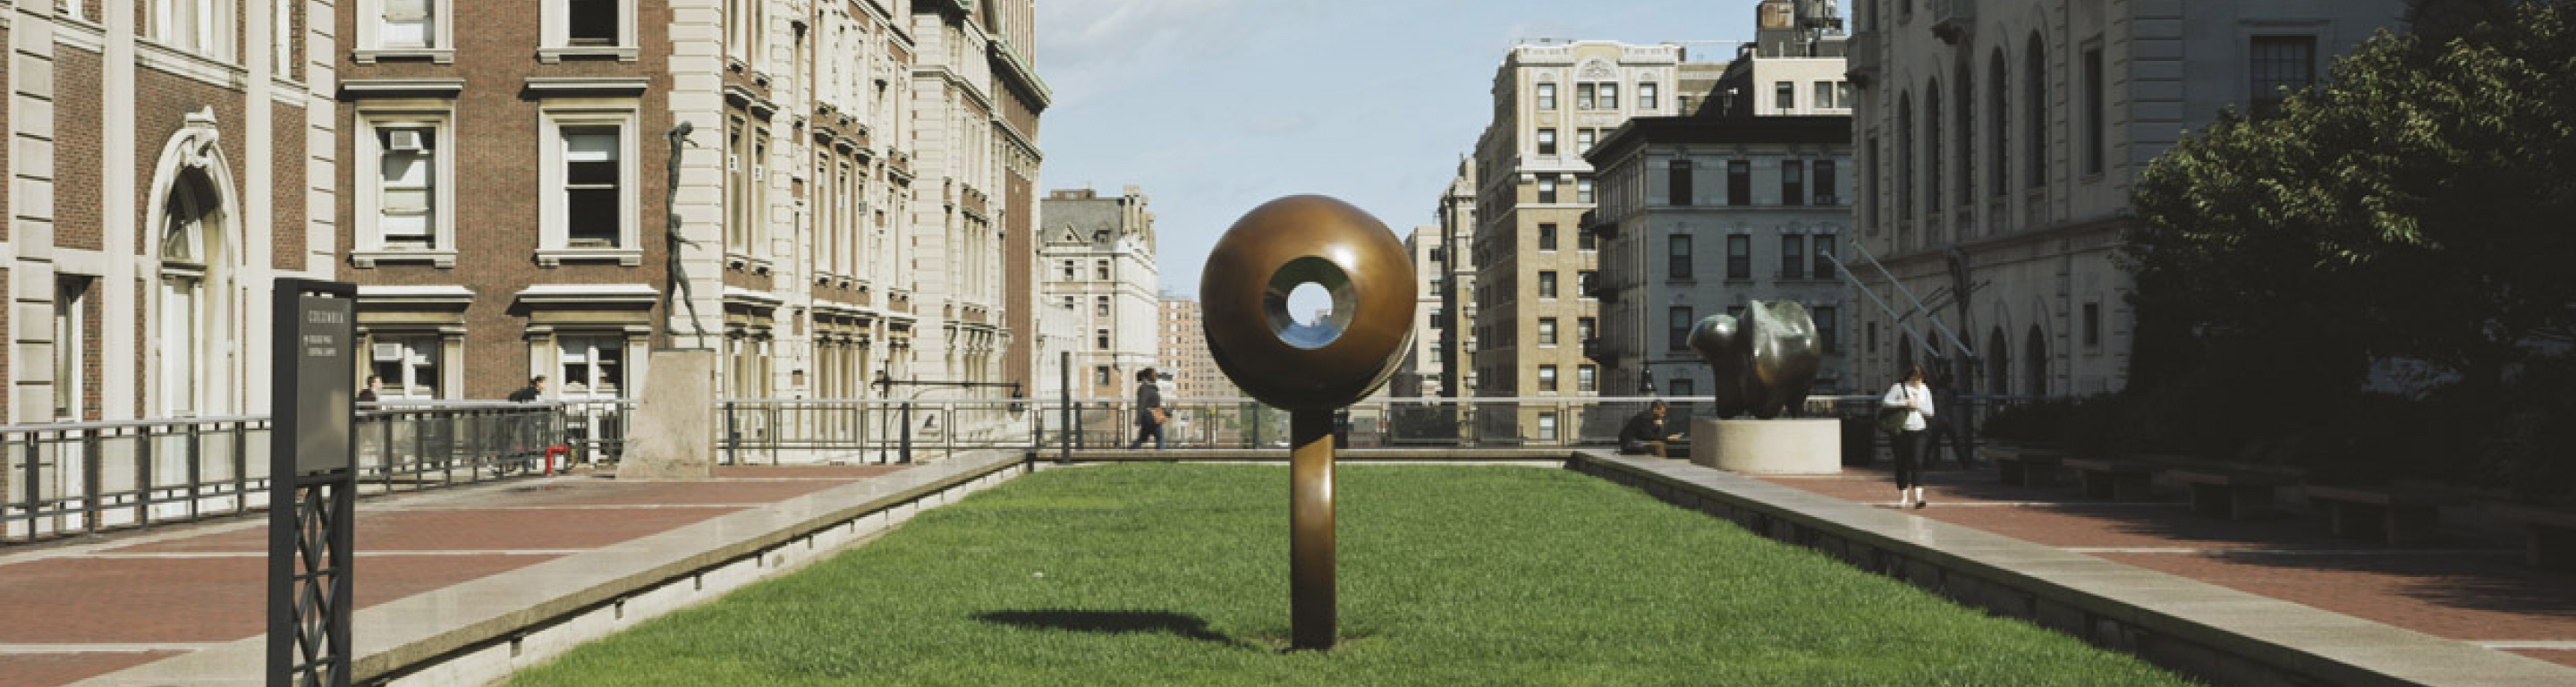 David Bakalar's Life Force sculpture on Revson Plaza